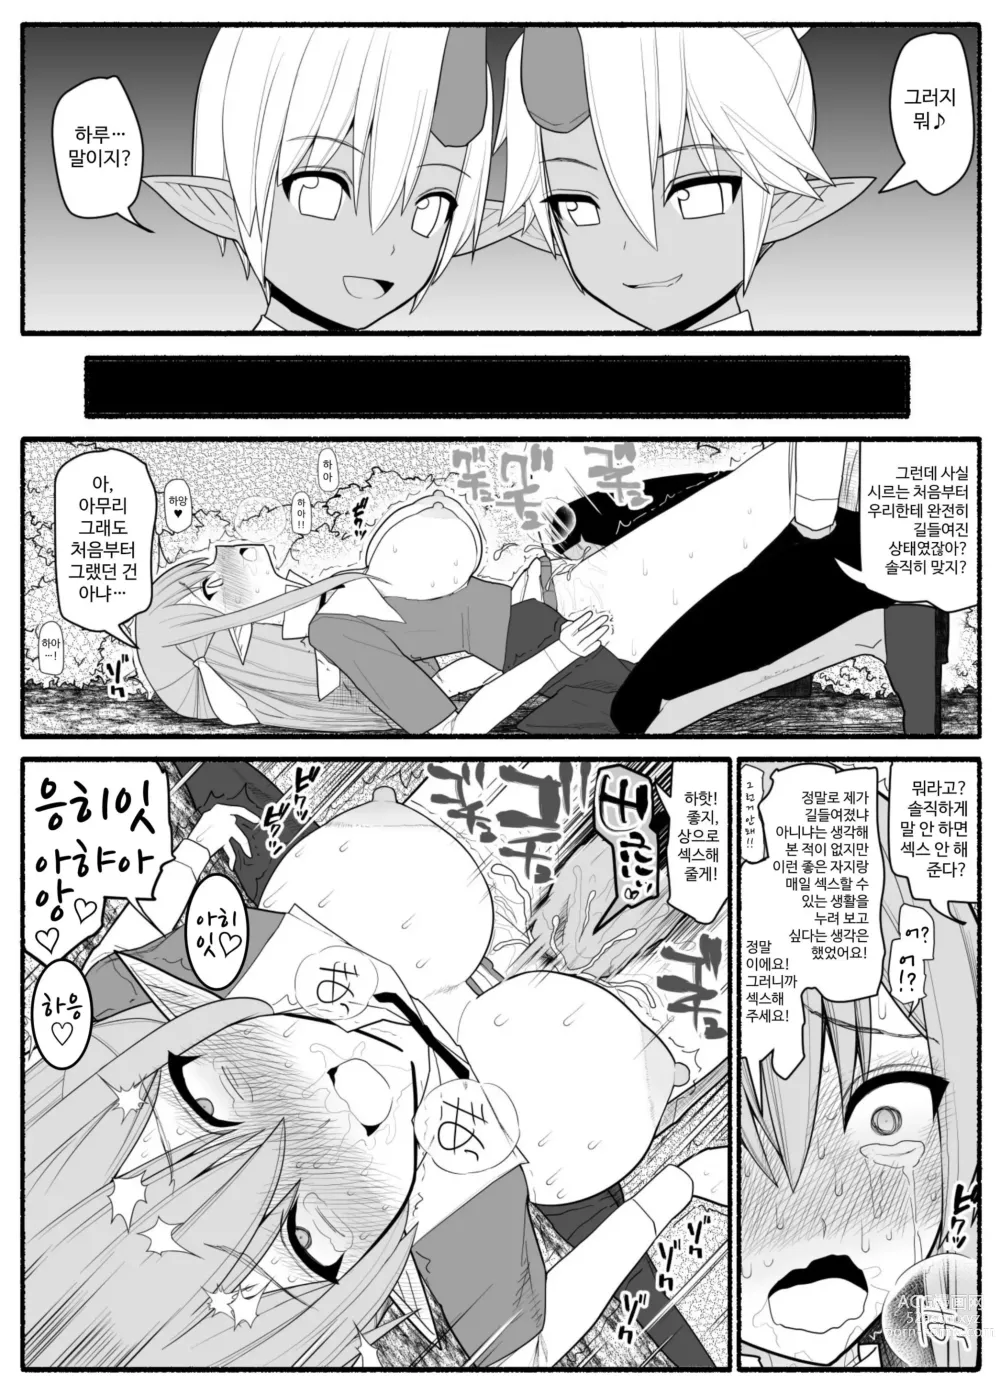 Page 37 of doujinshi Onna Elf VS Futago Inma